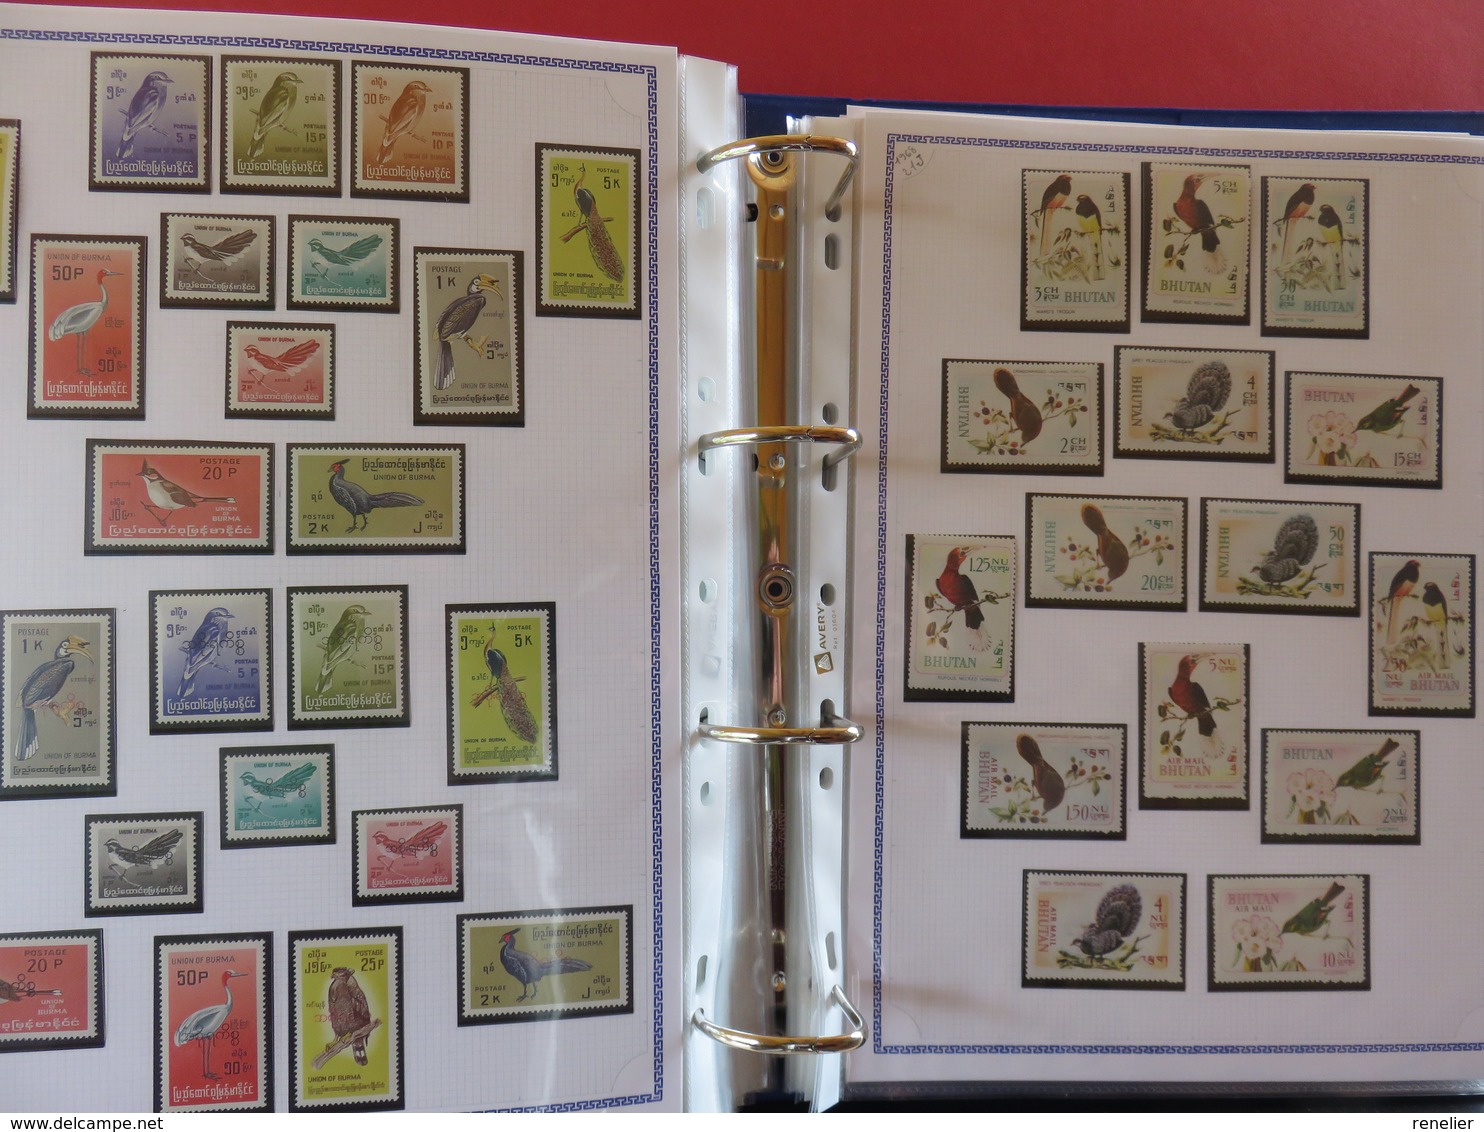 OISEAUX ALBUM n°1 - Belle collection sur le thème des oiseaux : TP*, TP** et TP° de plus de 160 PAYS